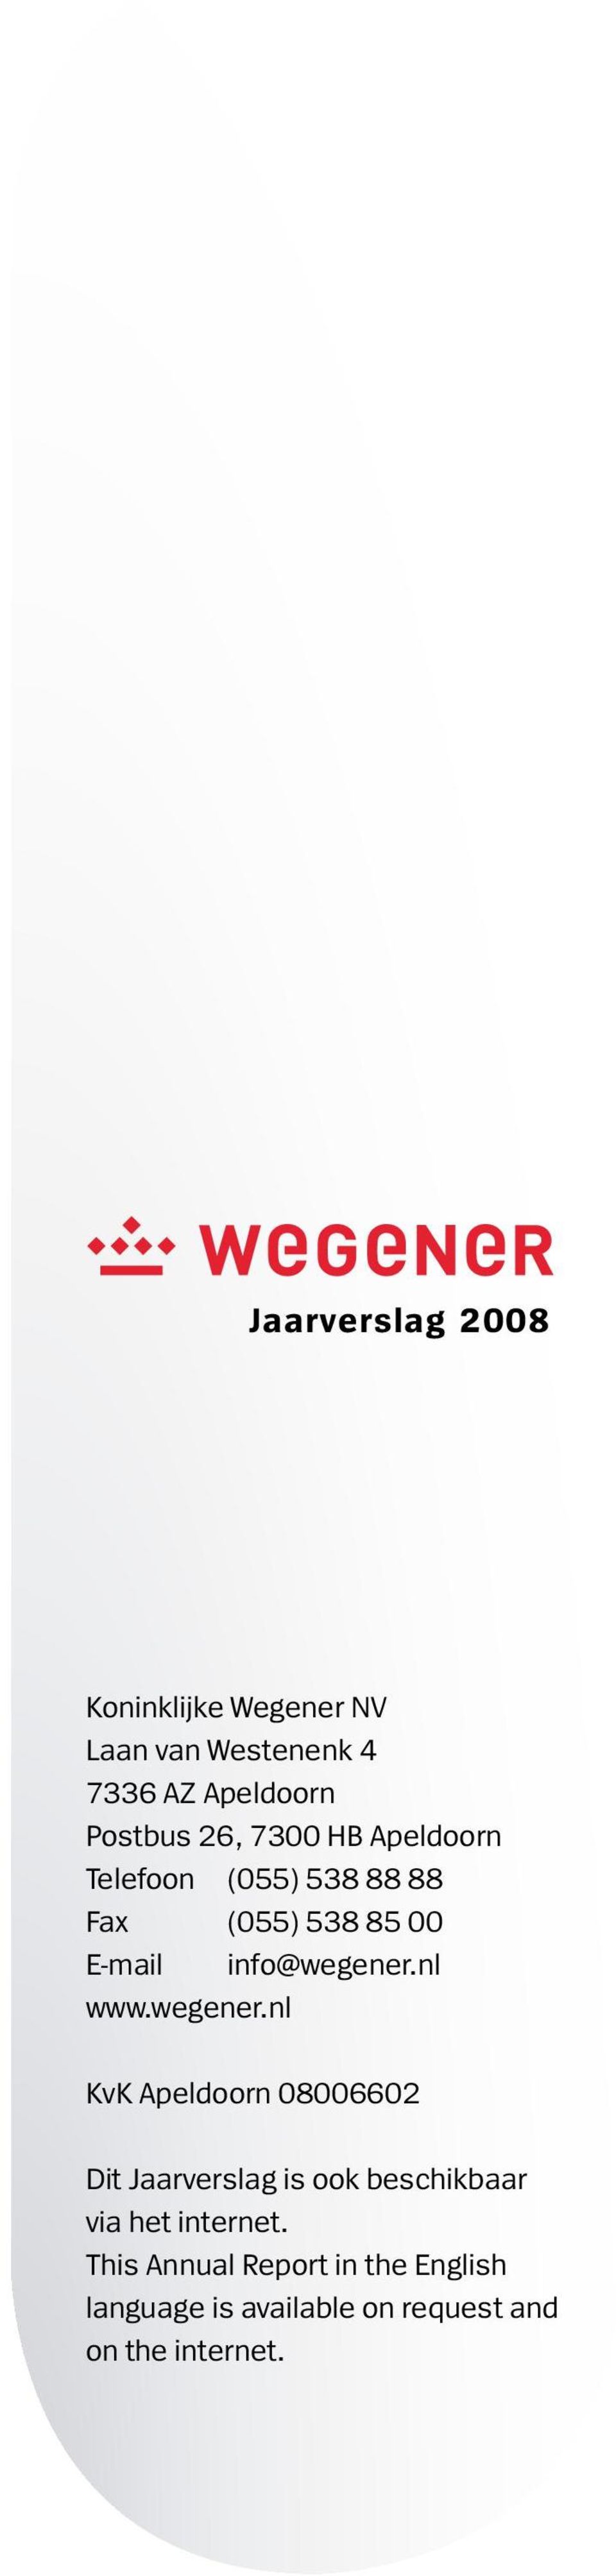 nl www.wegener.